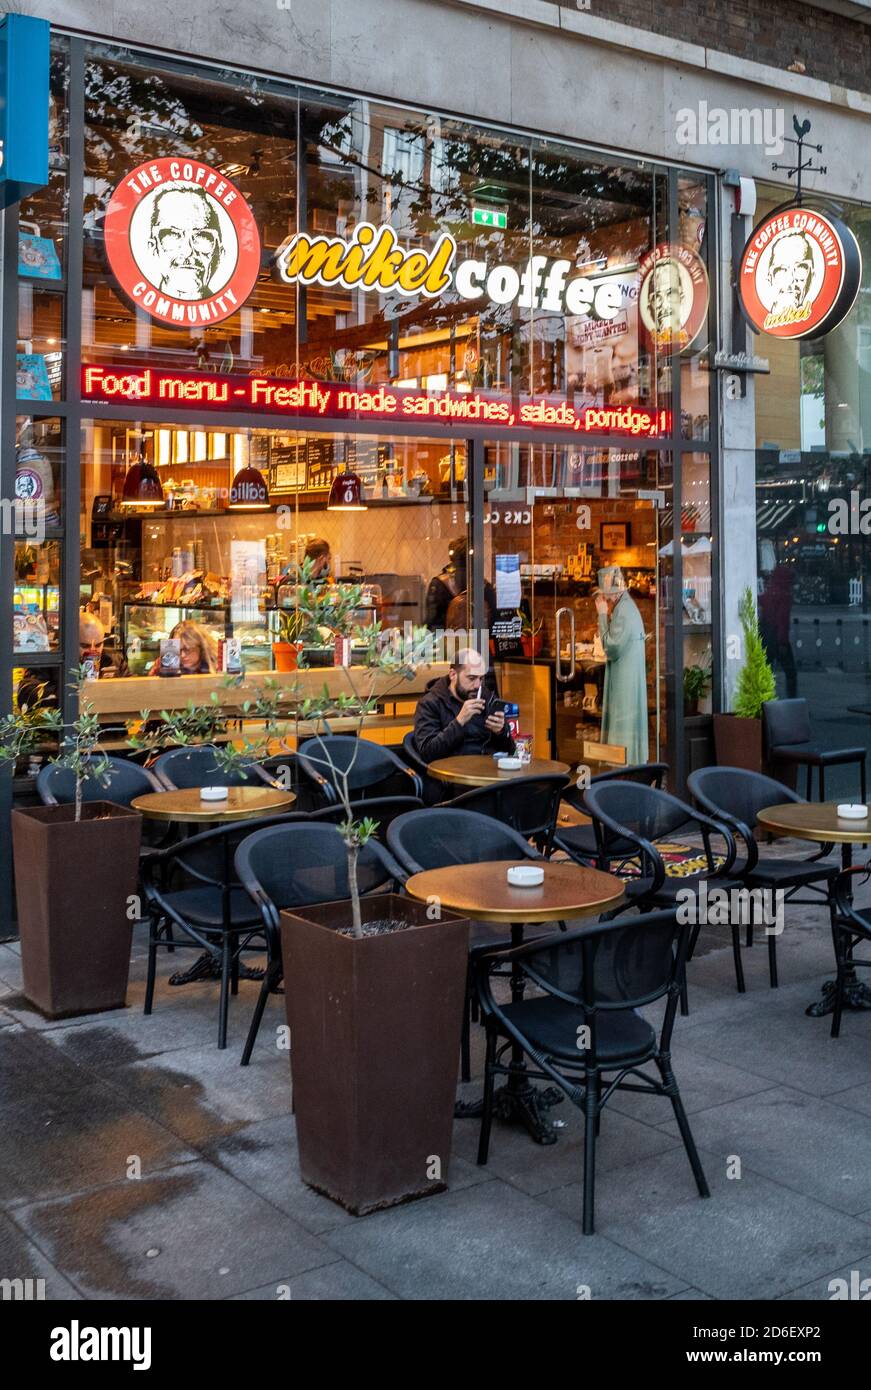 Mikel Coffee Shop London - Mikel Coffee Company ist eine in Griechenland ansässige Kaffeehaus-Kette mit rund 250 Geschäften weltweit. Mikel Coffeehouse Stockfoto